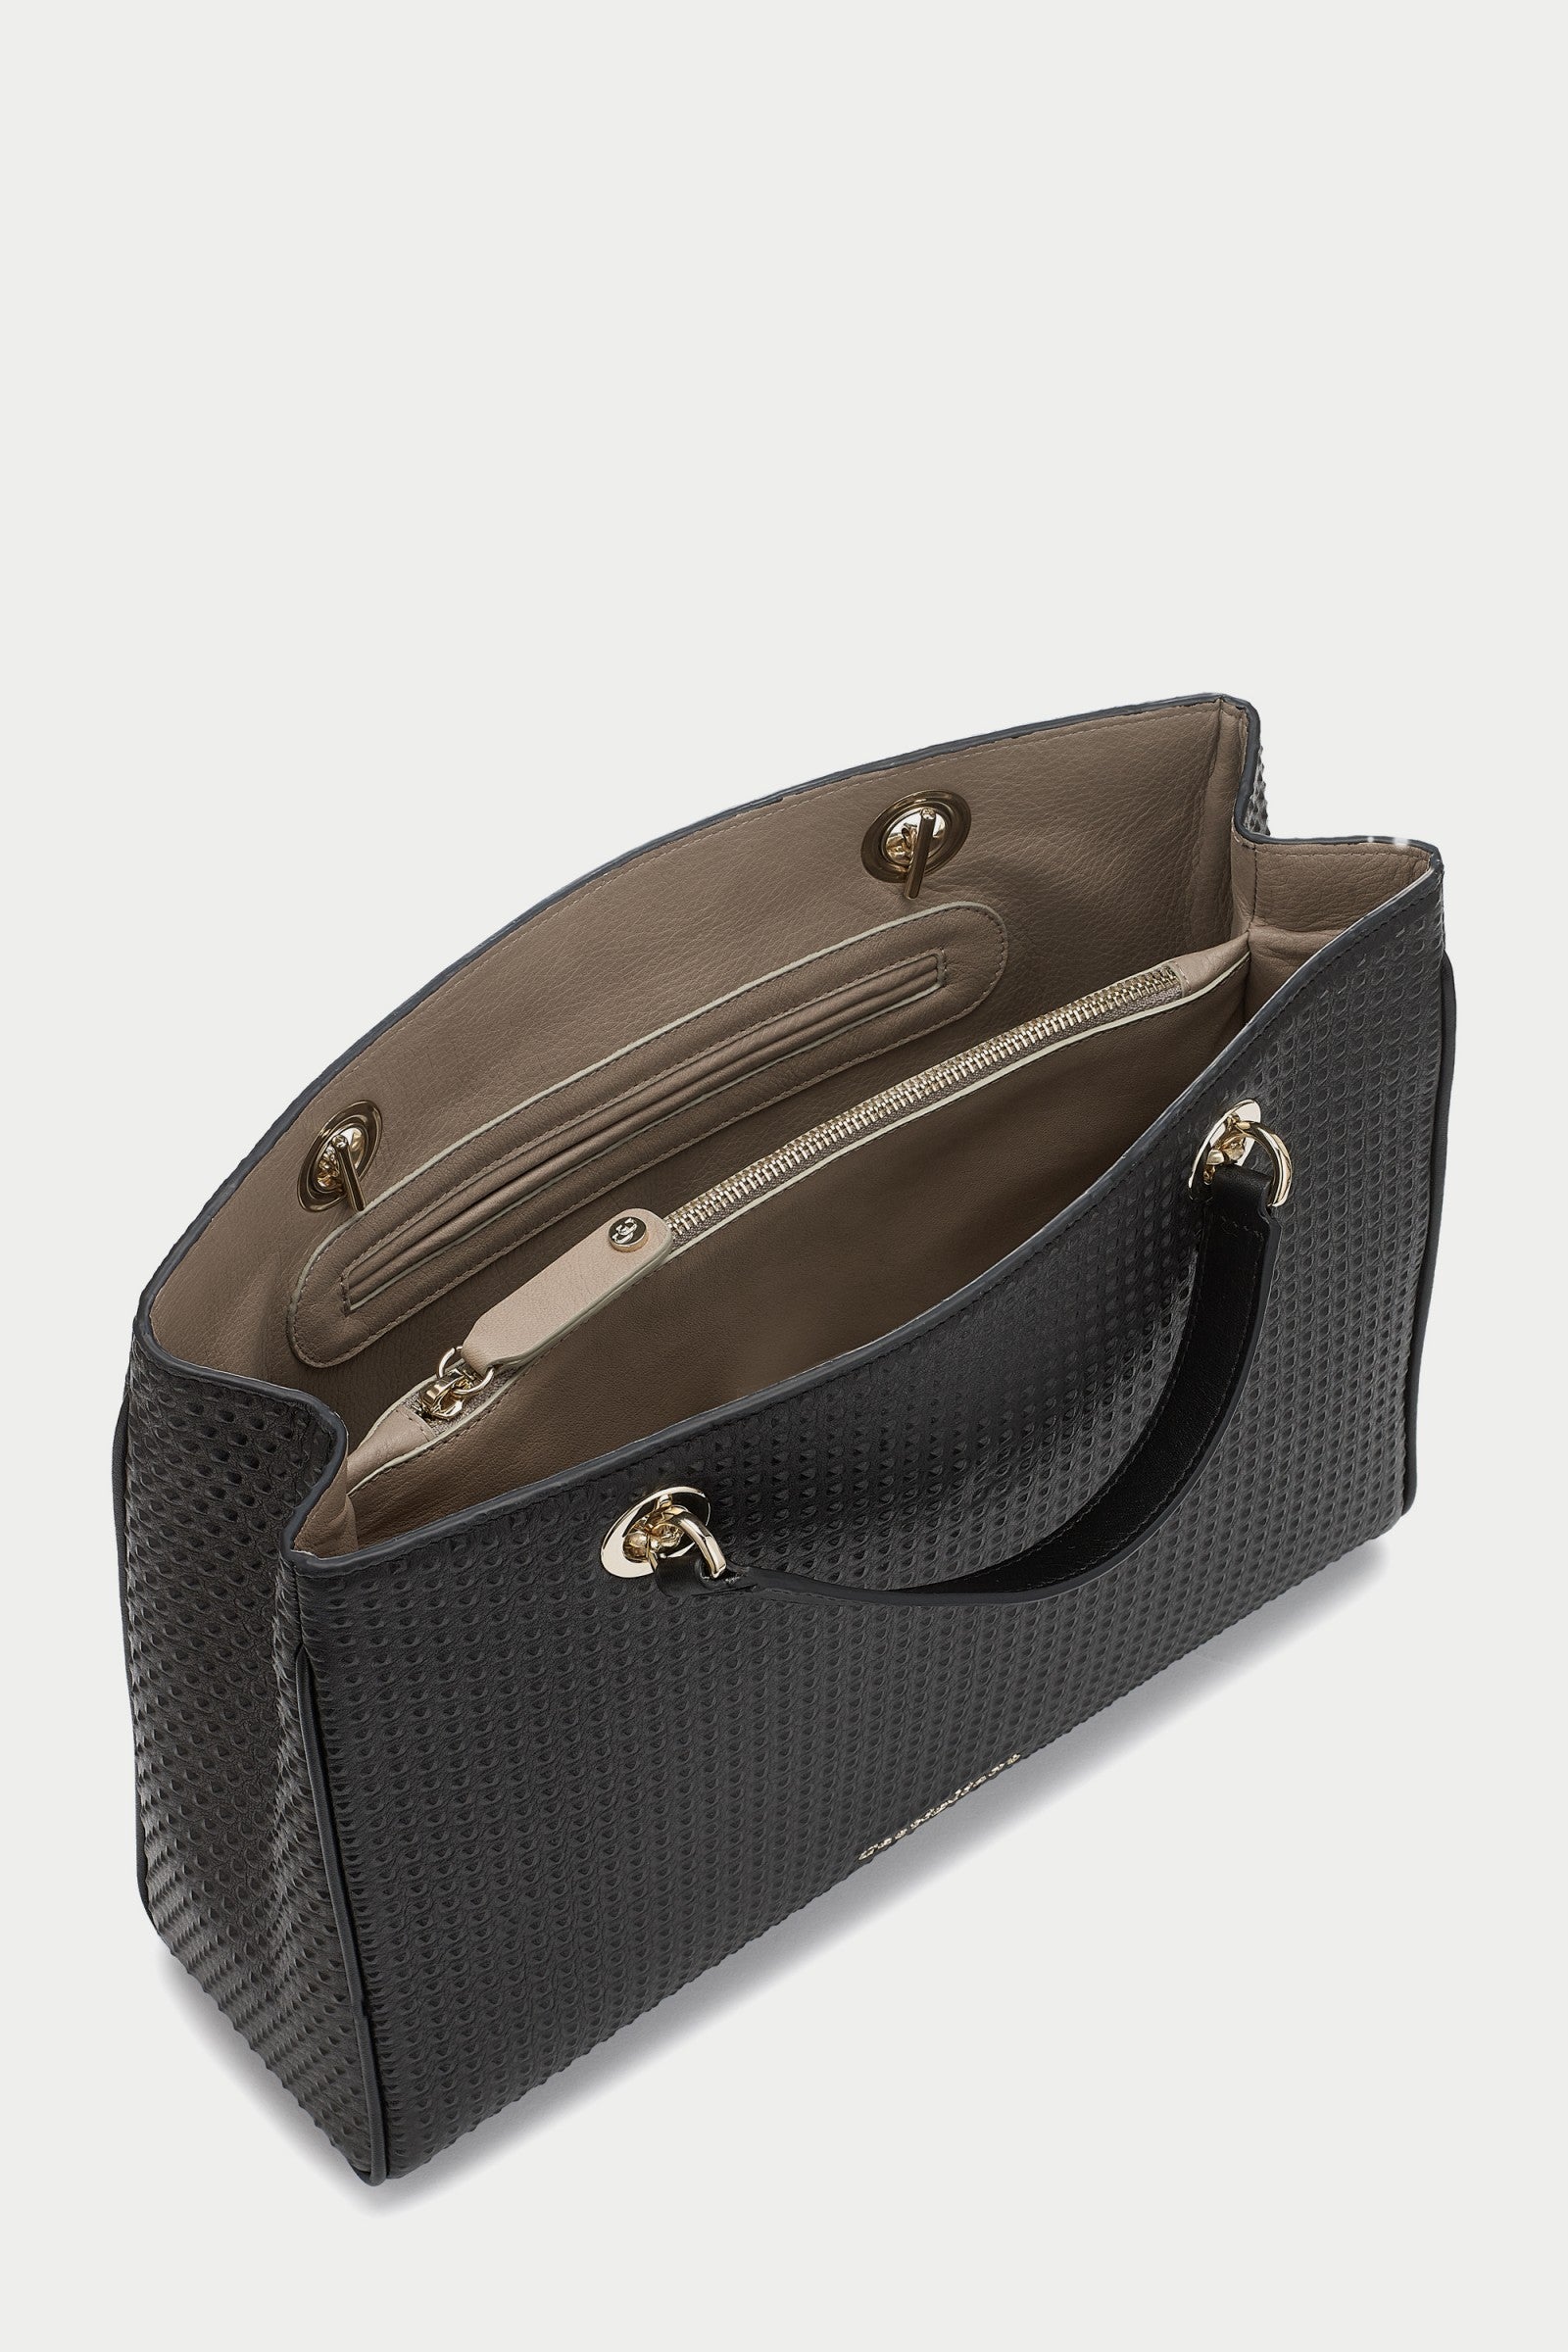 Francine BLACK Embossed Leather Handbag